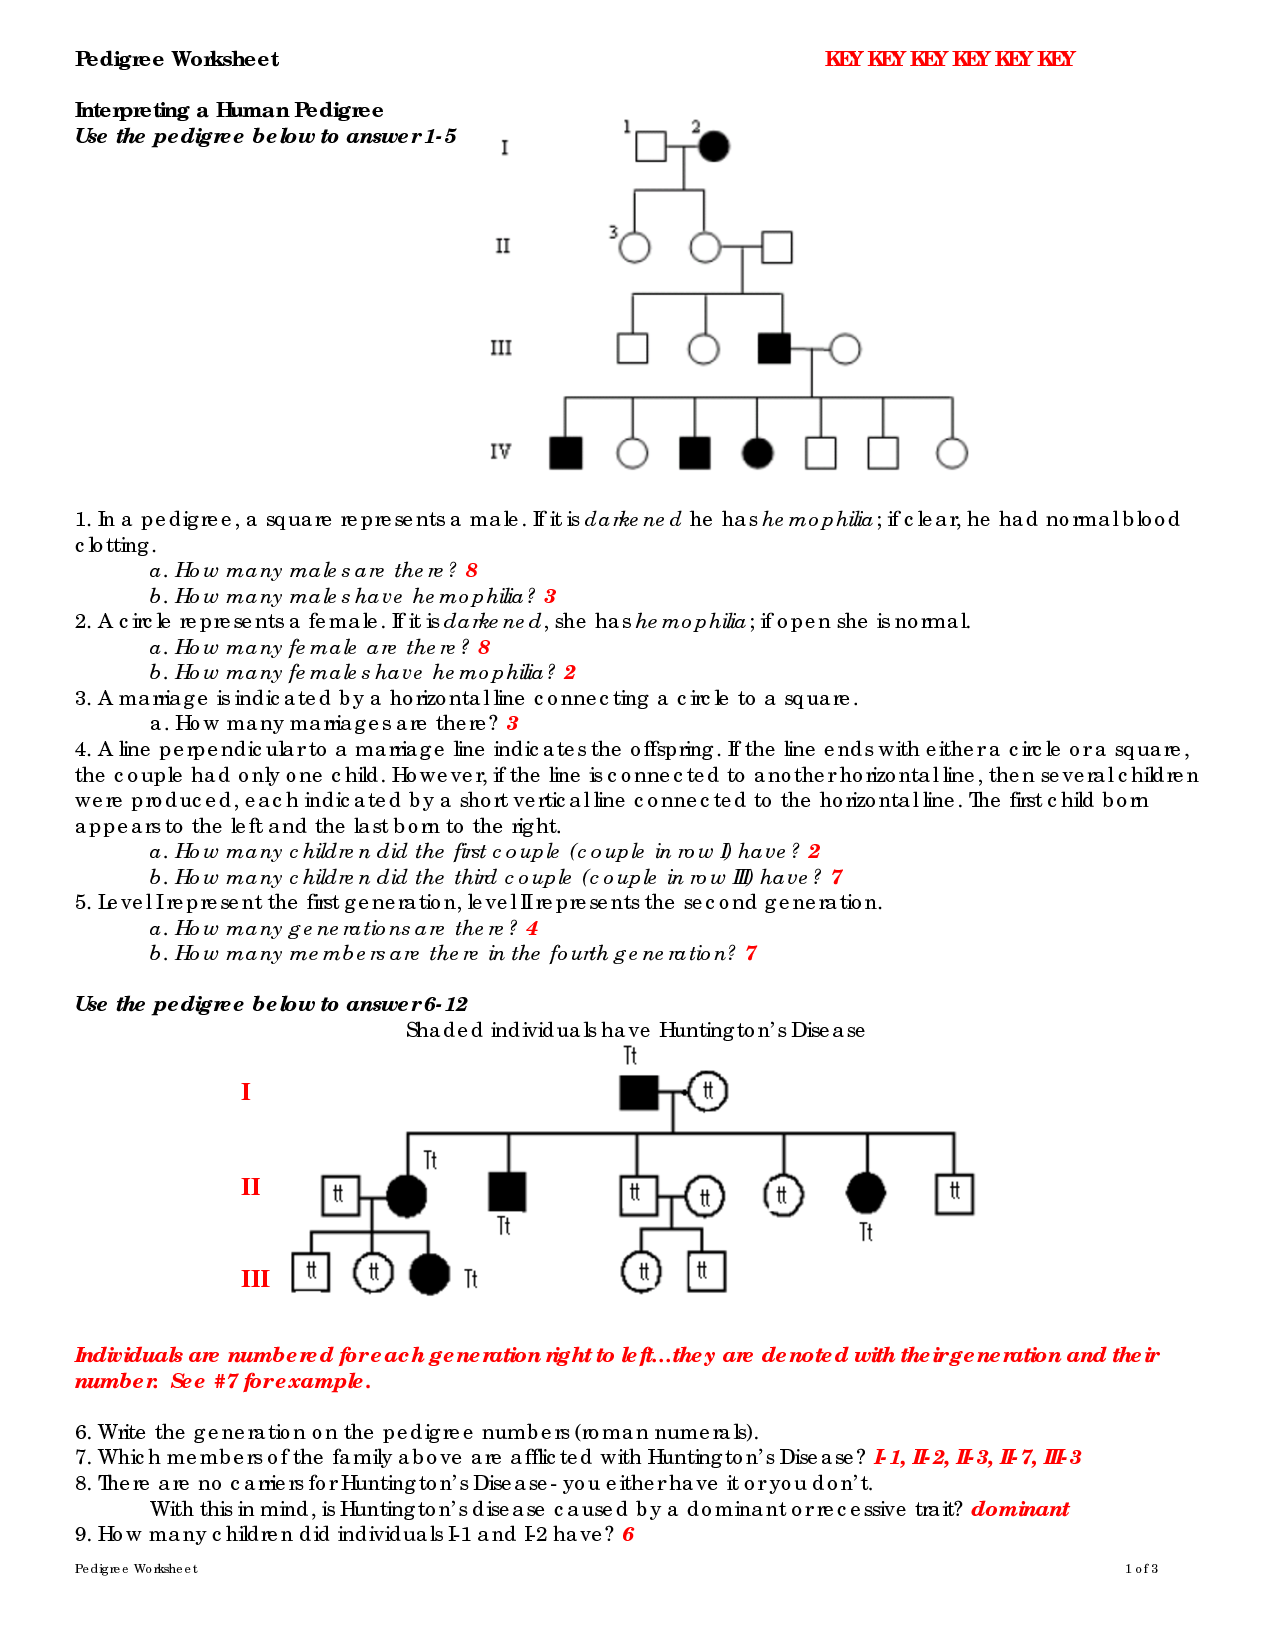 15-best-images-of-pedigree-problem-worksheet-answers-genetics-pedigree-worksheet-answer-key